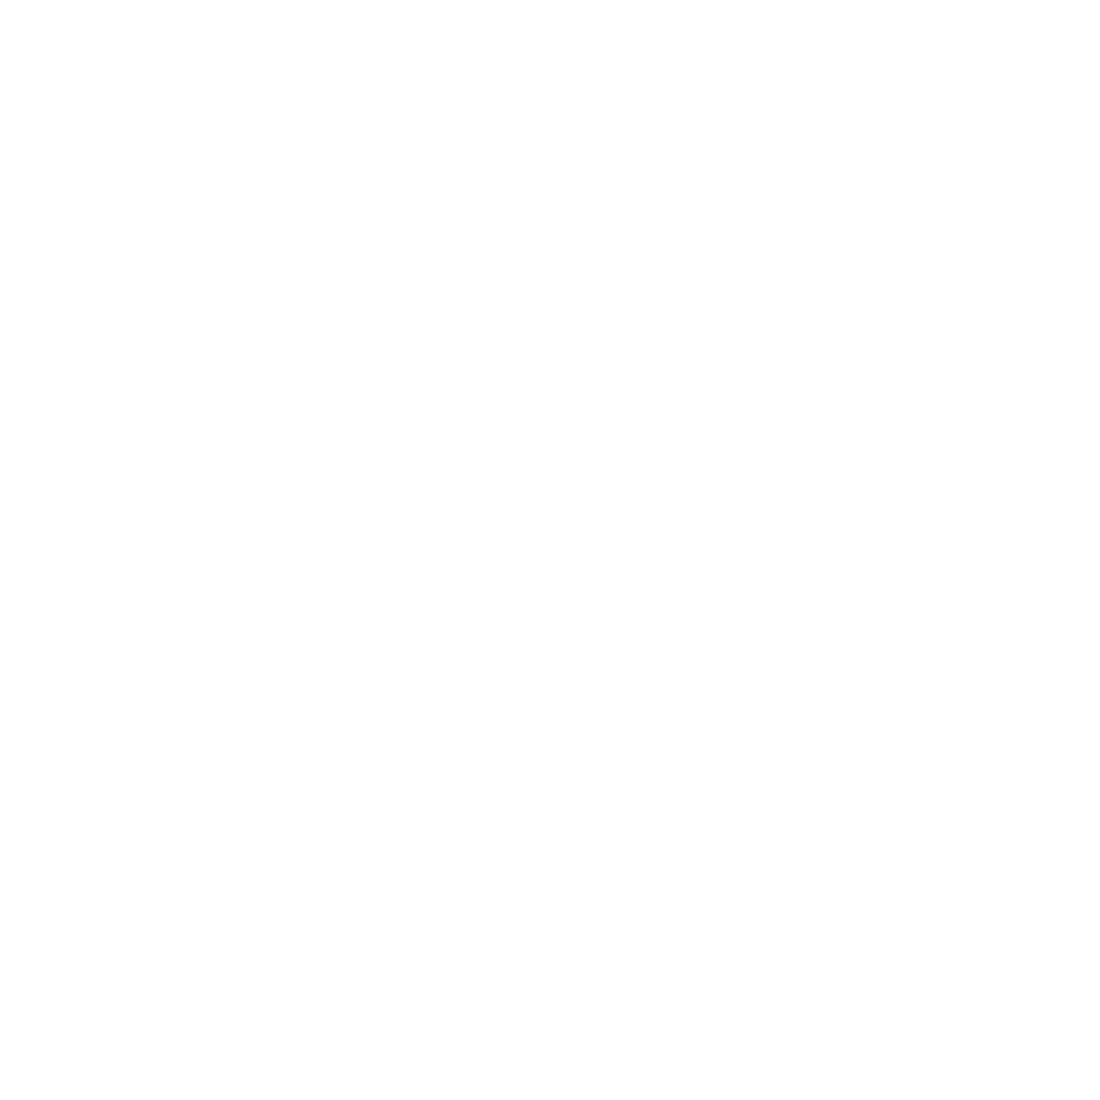 Aletha Health